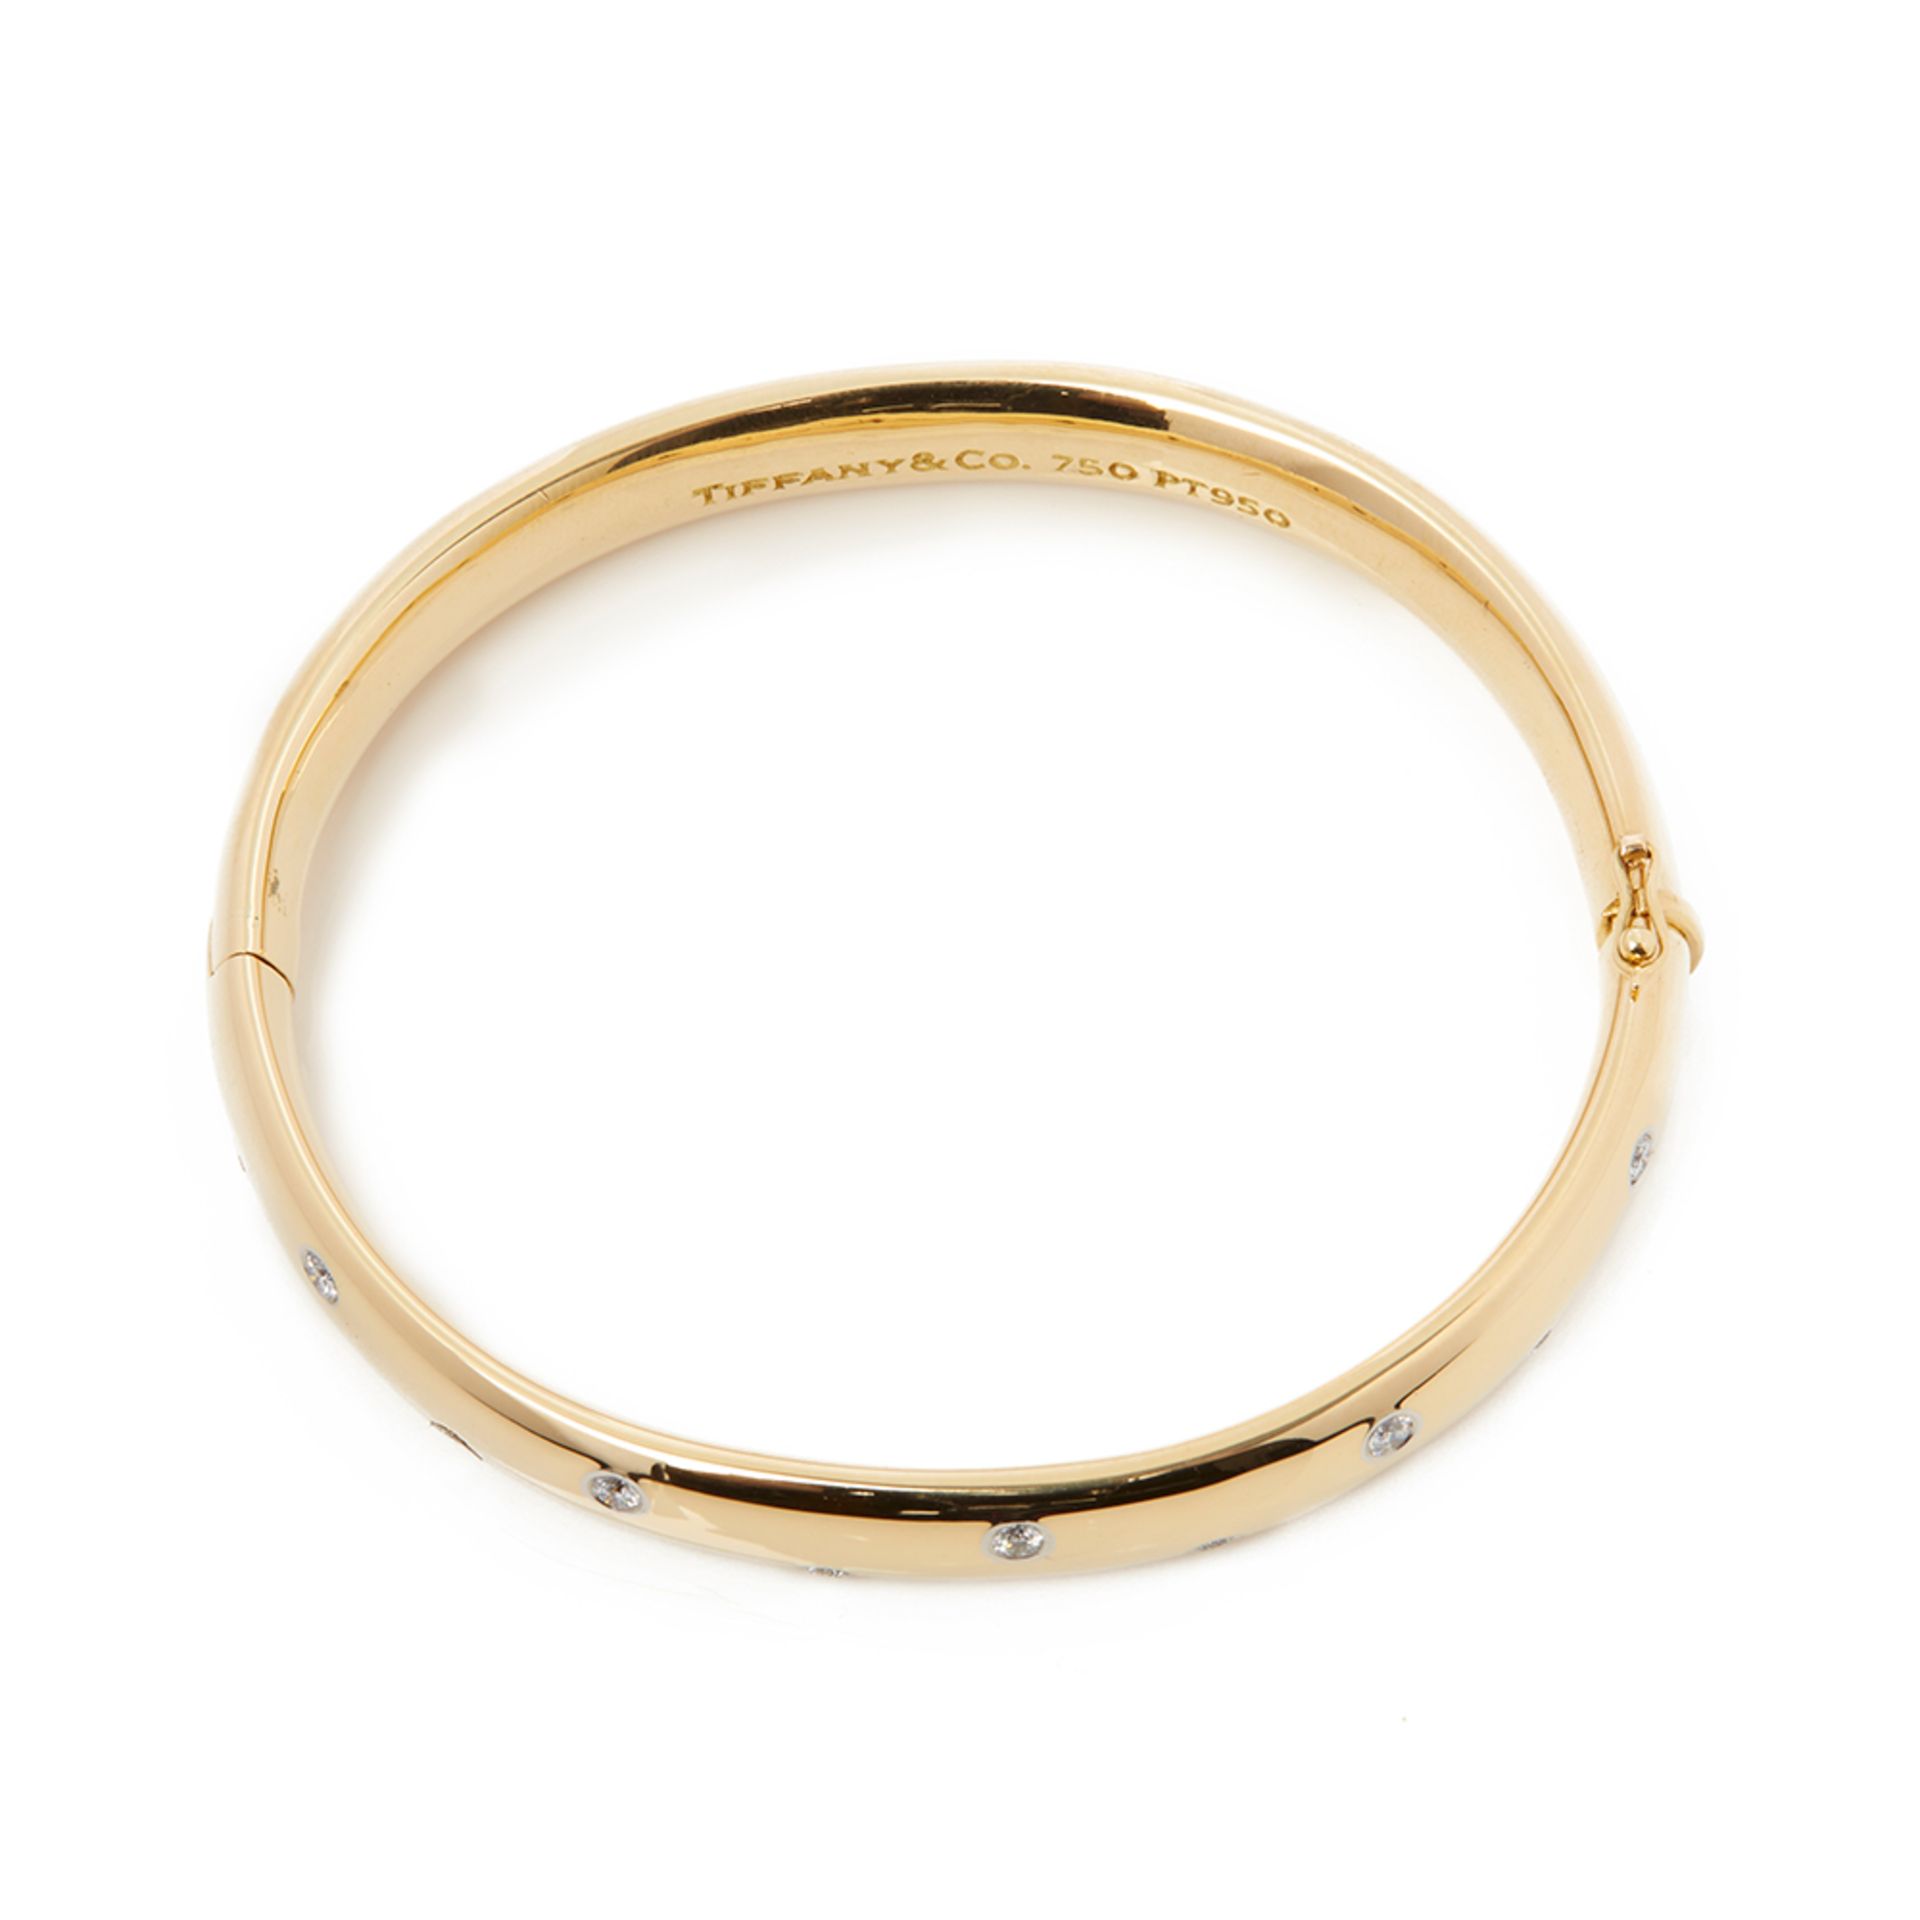 Tiffany & Co. 18k Yellow Gold Diamond Etoile Bracelet - Image 6 of 8